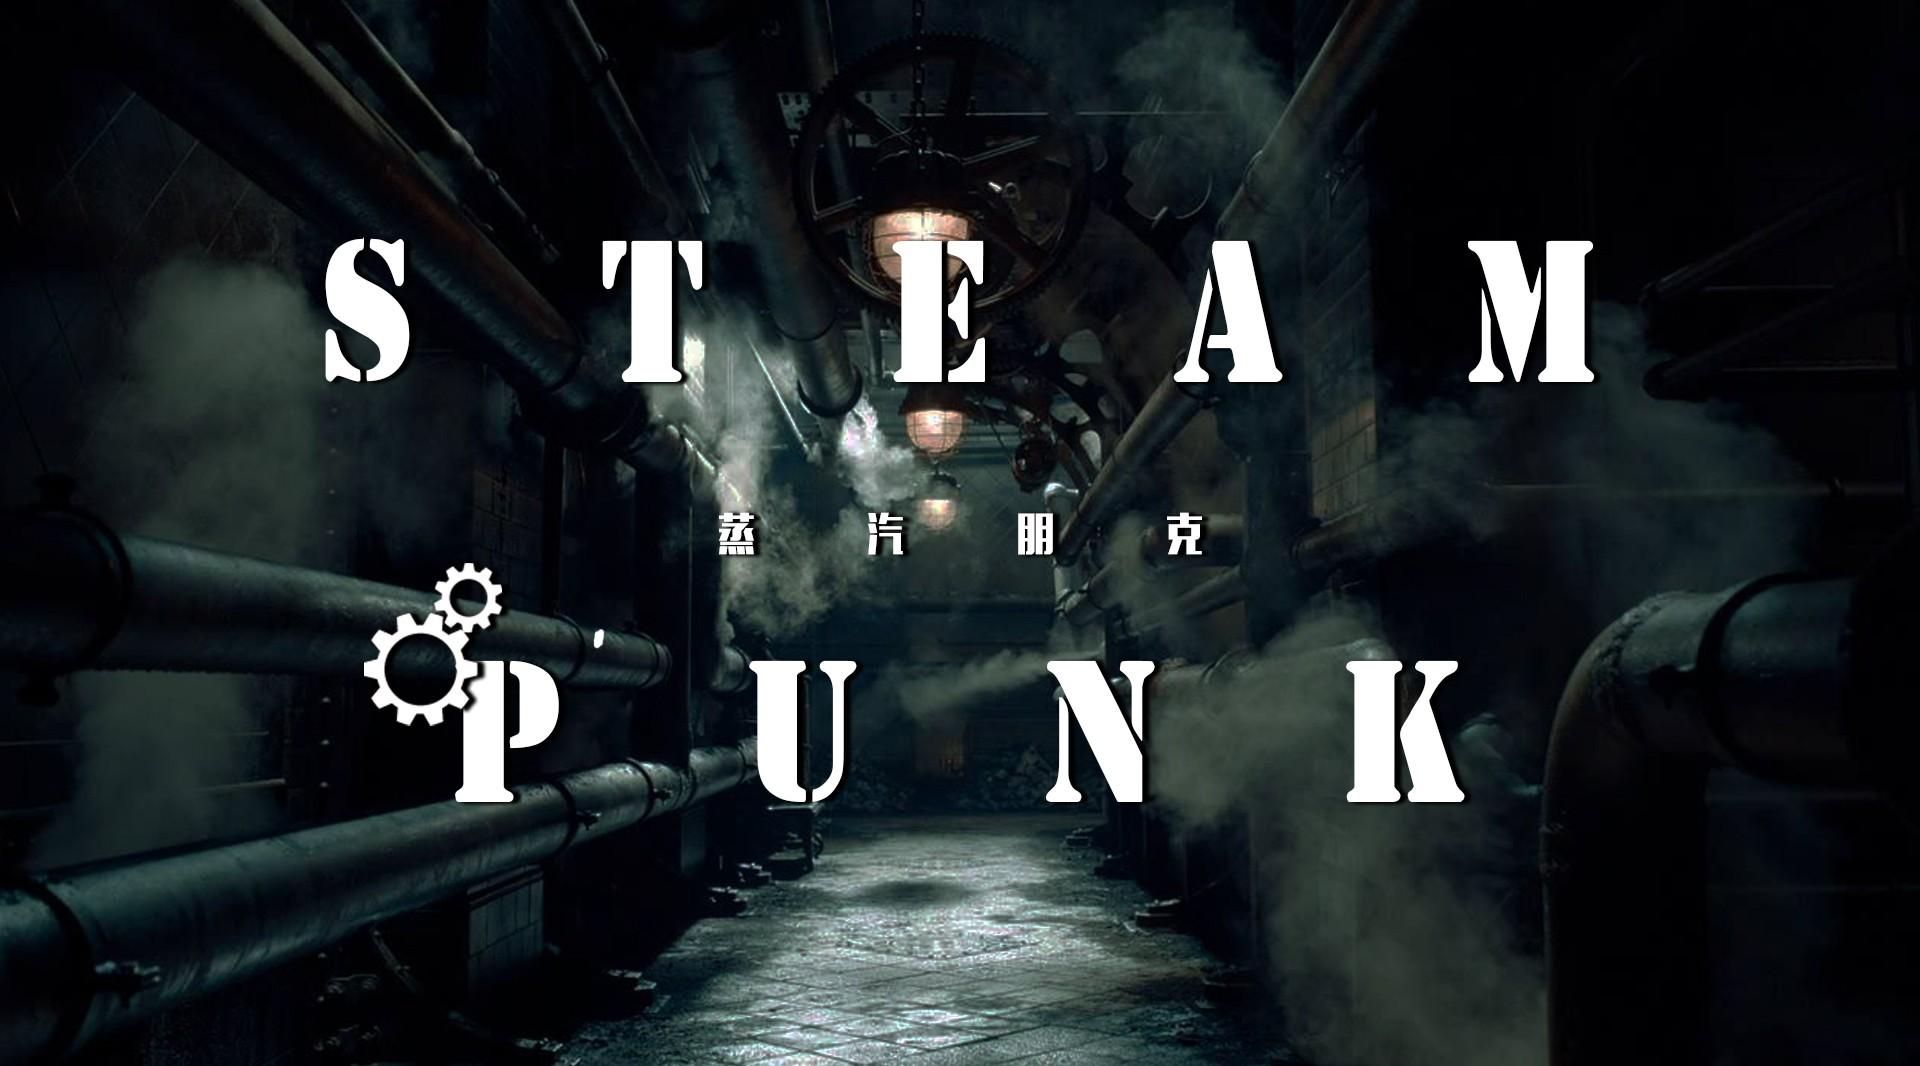 【混剪】Steam Punk 蒸汽朋克